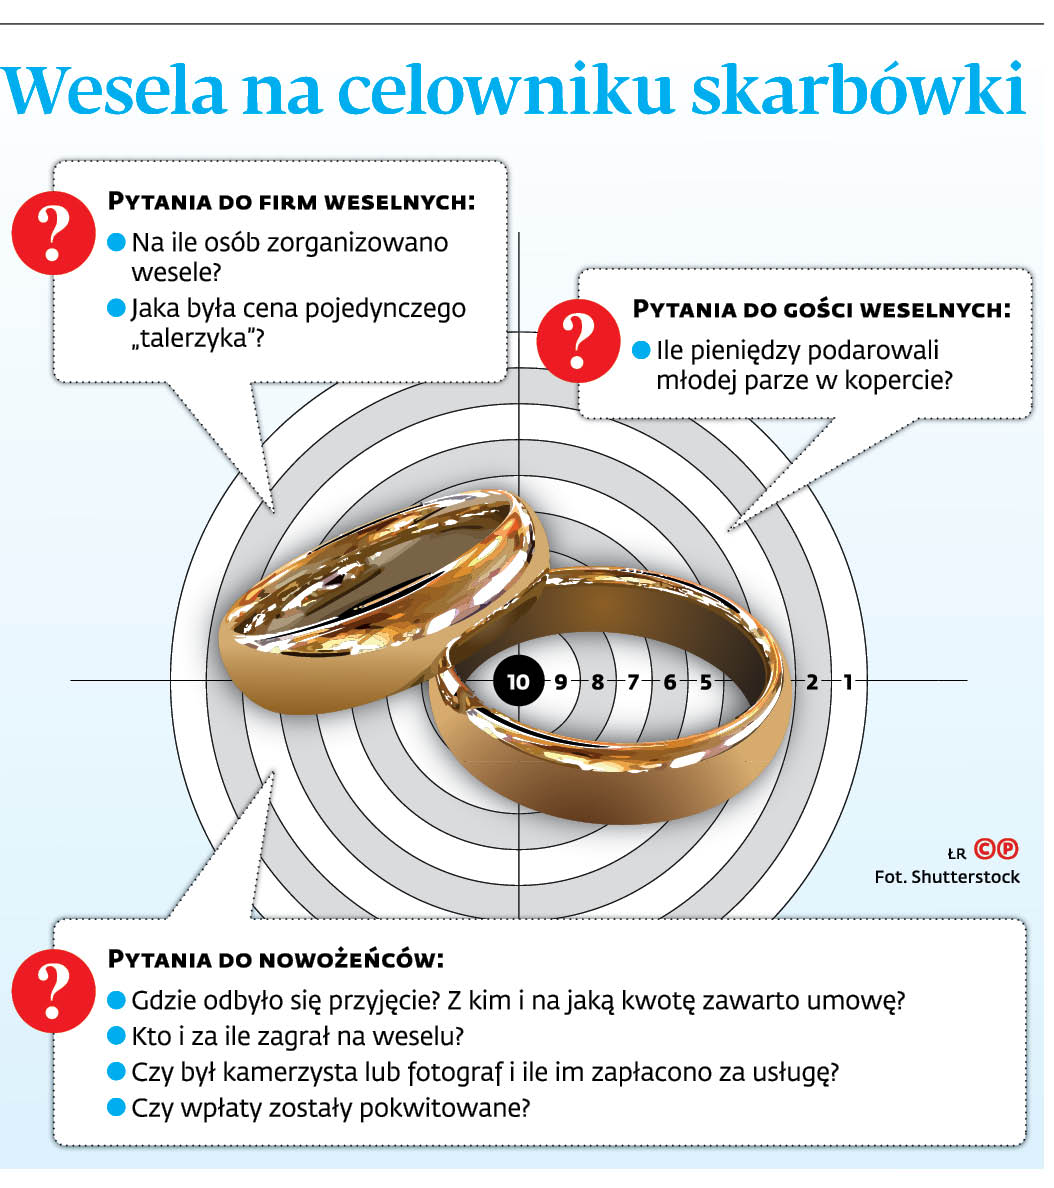 Wesele pod kontrolą skarbówki. Fiskus chce wiedzieć, ile było w kopercie -  Forsal.pl – Biznes, Gospodarka, Świat